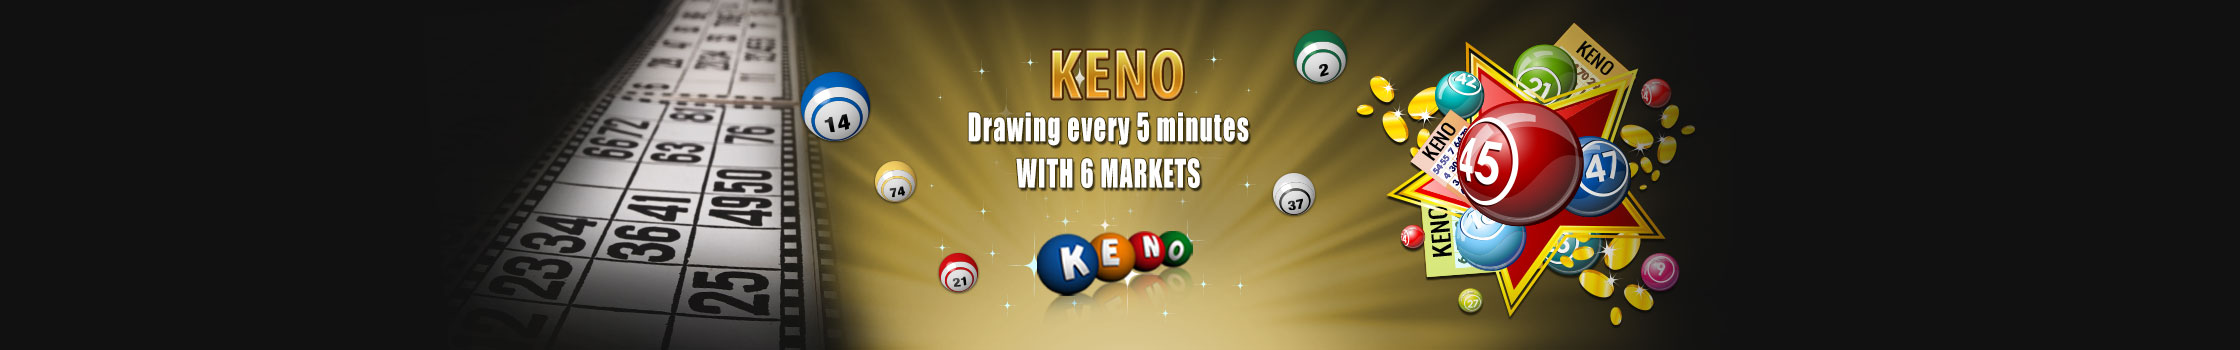 Keno Gambling Online